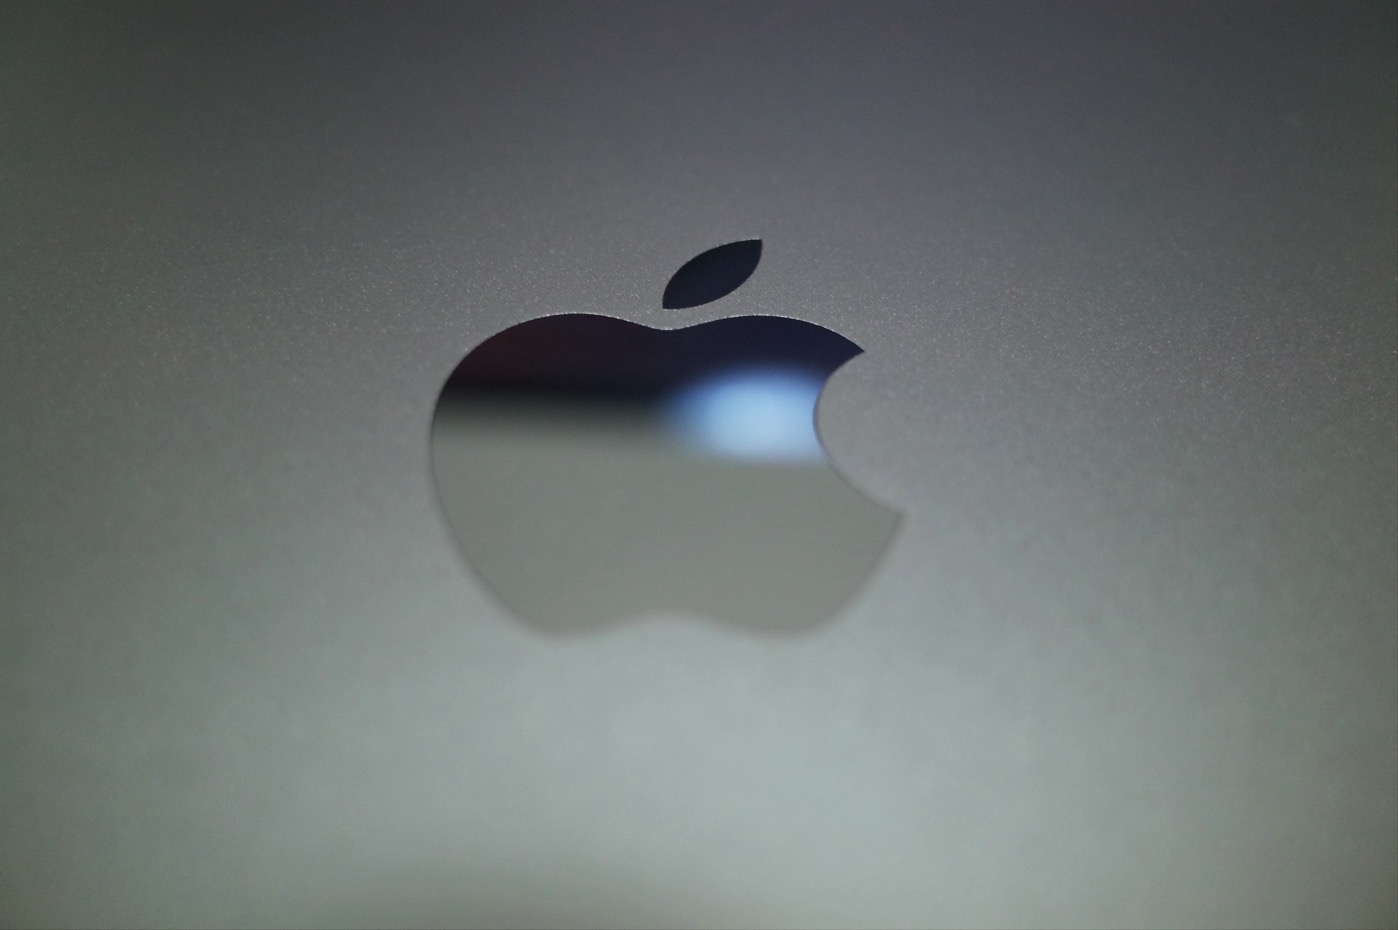 [Mac]待ちに待った新型MacBook Pro 15″ TouchBar モデルが届いたので早速開封してみたよ